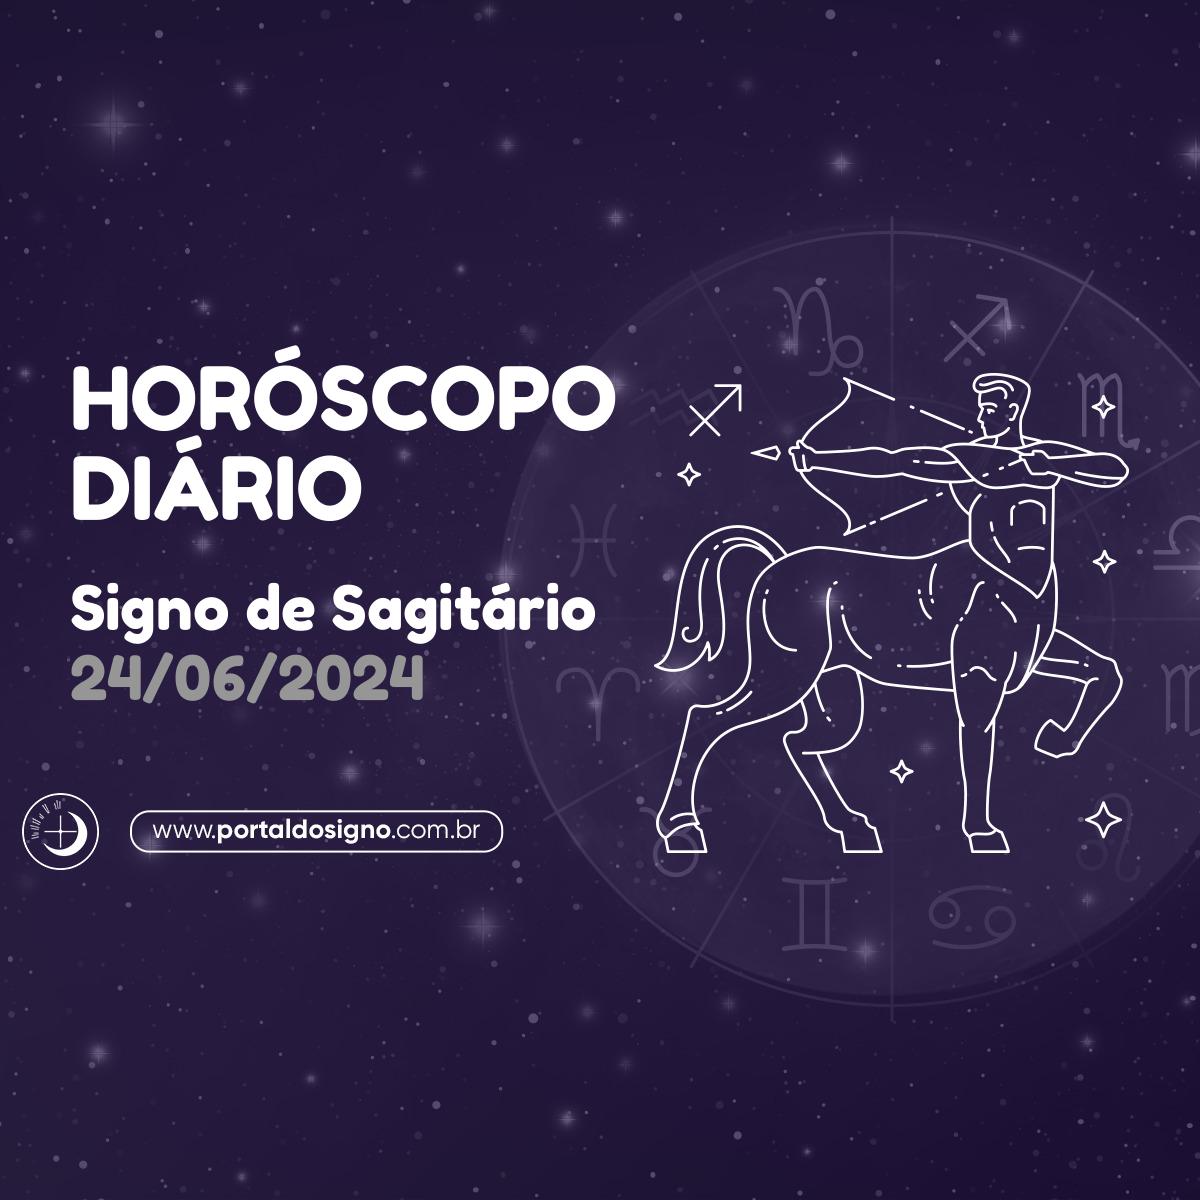 Horóscopo diário para Sagitário em 24/06/2024